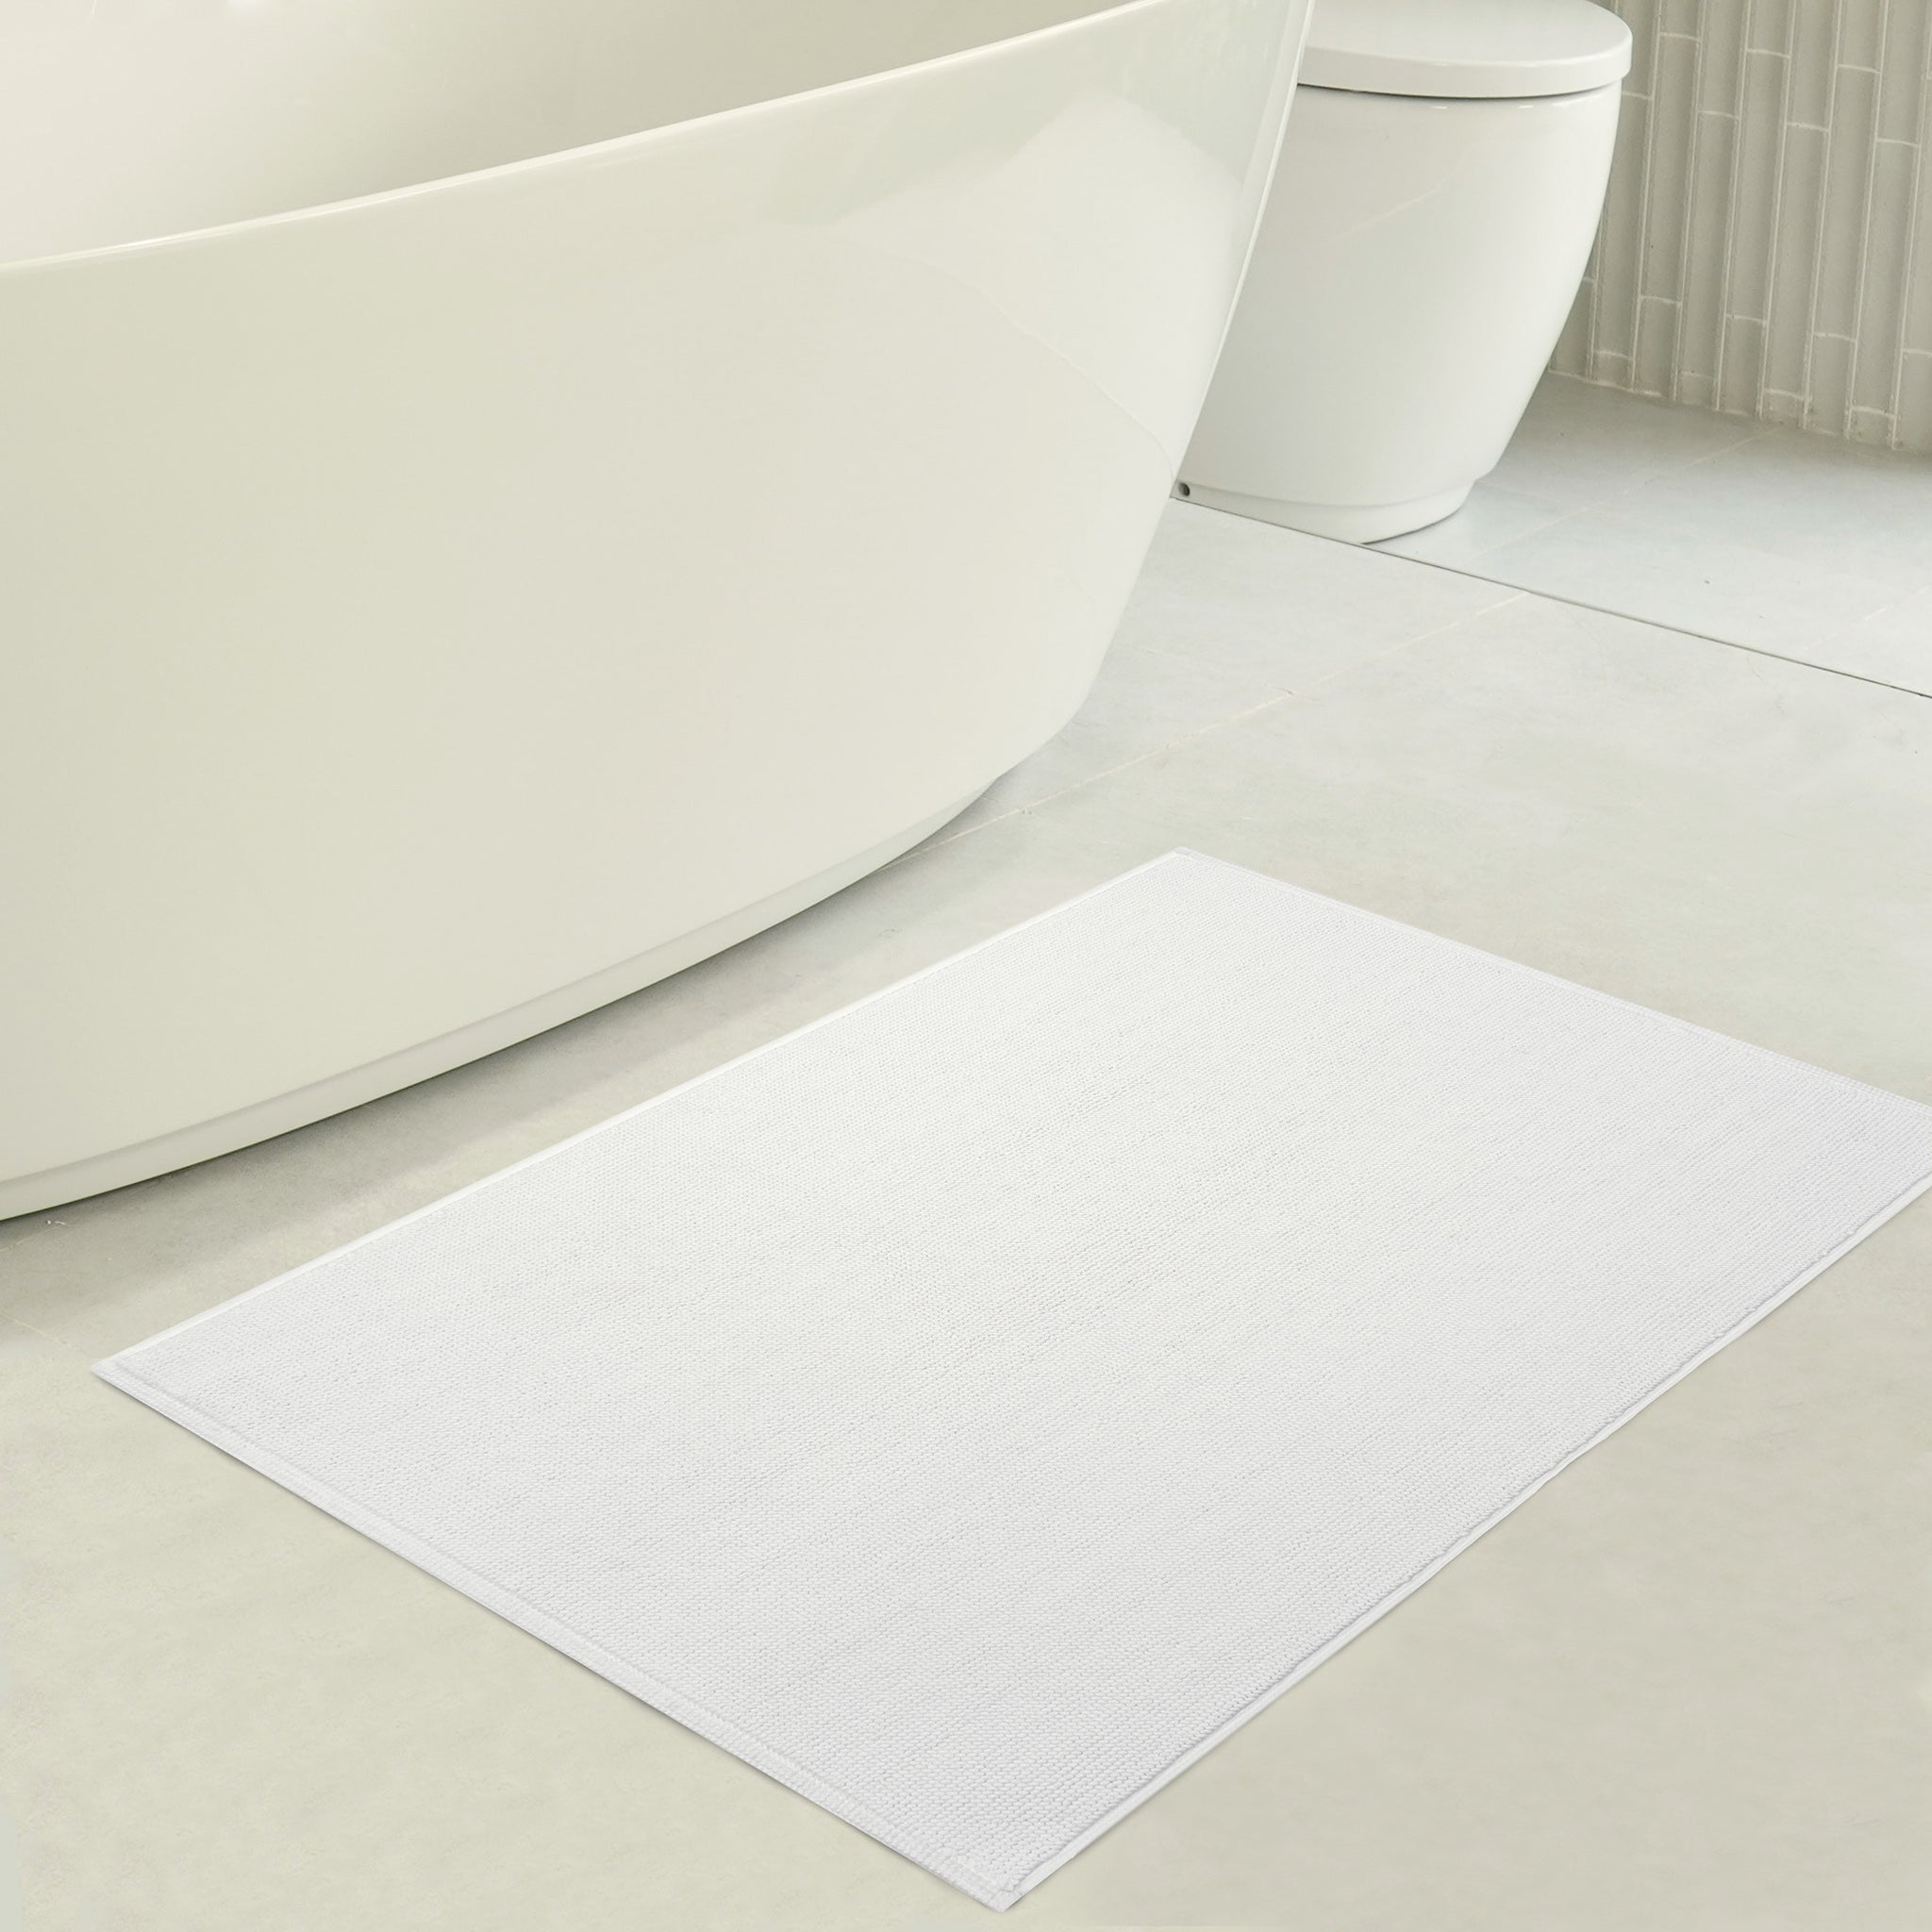 American Soft Linen 100% Cotton Non-Slip 17x24 Inch Bath Rug Wholesale white-3